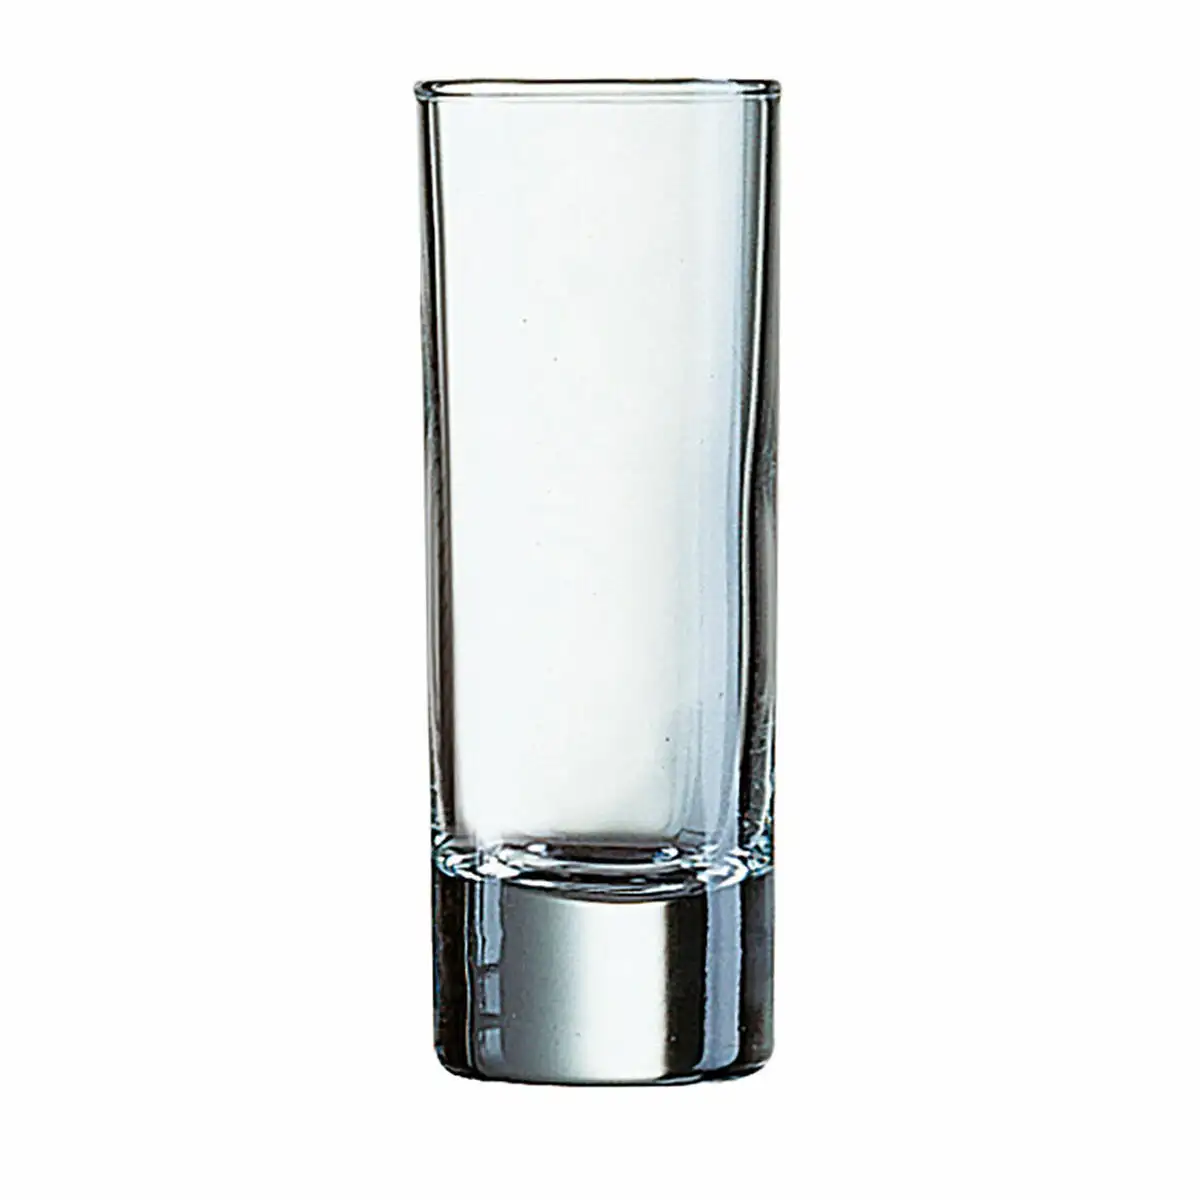 Ensemble de verres arcoroc islande 12 unite s verre transparent 6 cl_7335. DIAYTAR SENEGAL - Là où Chaque Achat a du Sens. Explorez notre gamme et choisissez des produits qui racontent une histoire, du traditionnel au contemporain.